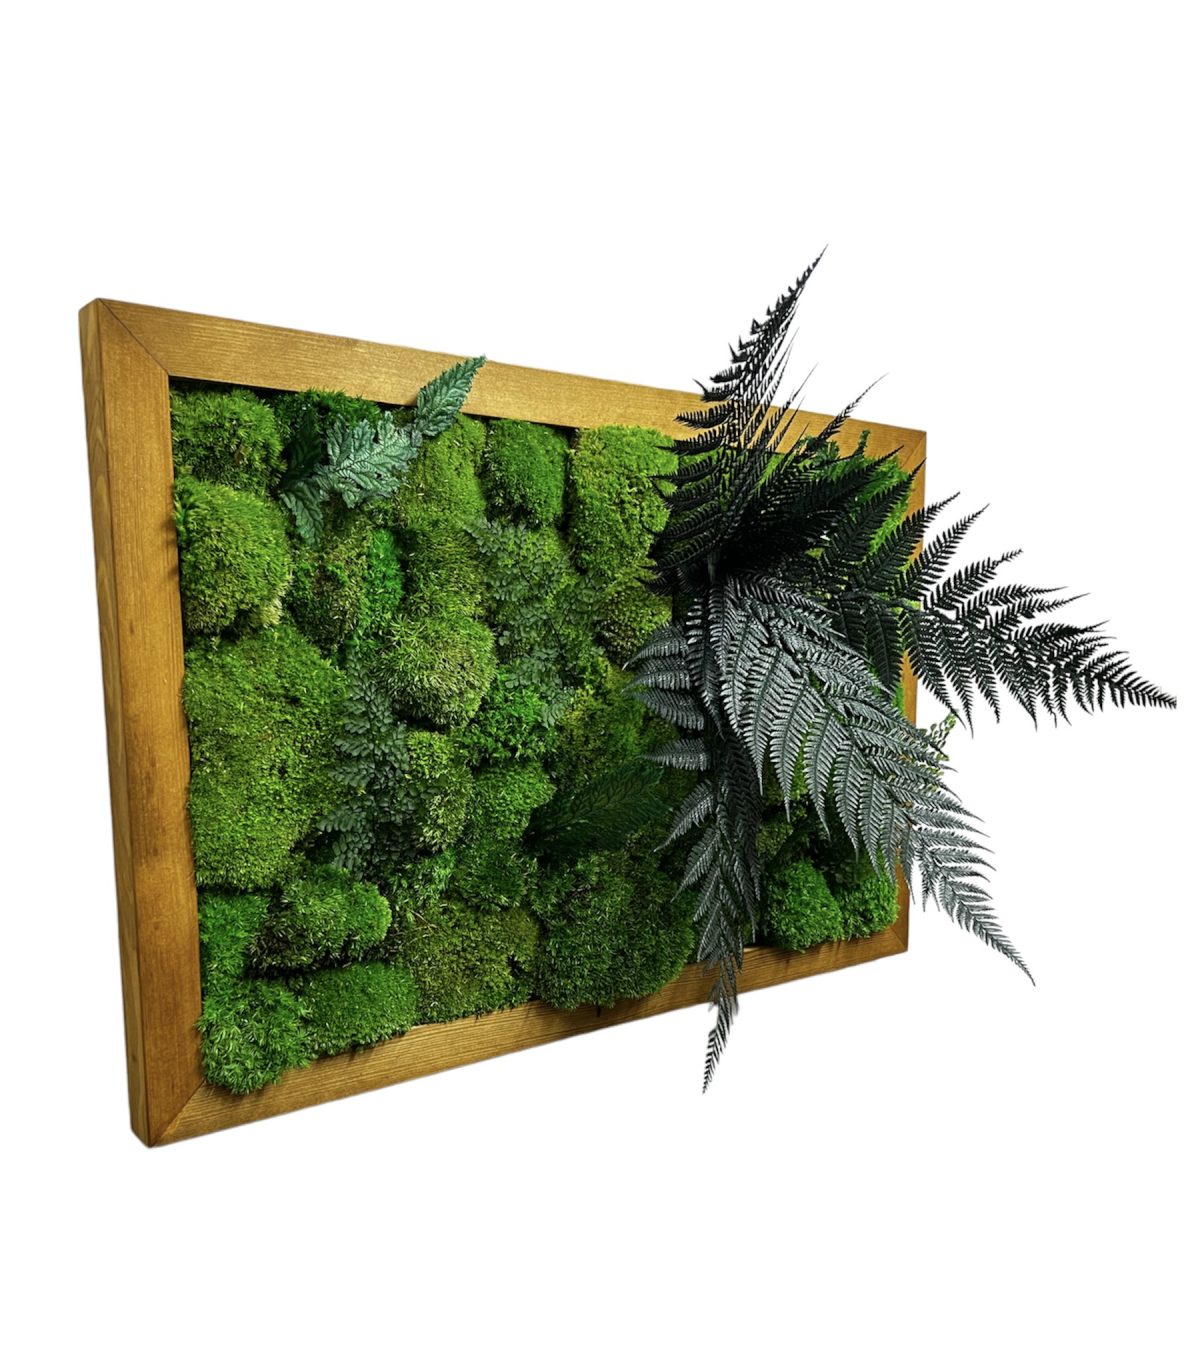 Moosbild mit Kugelmoos und Pflanzen